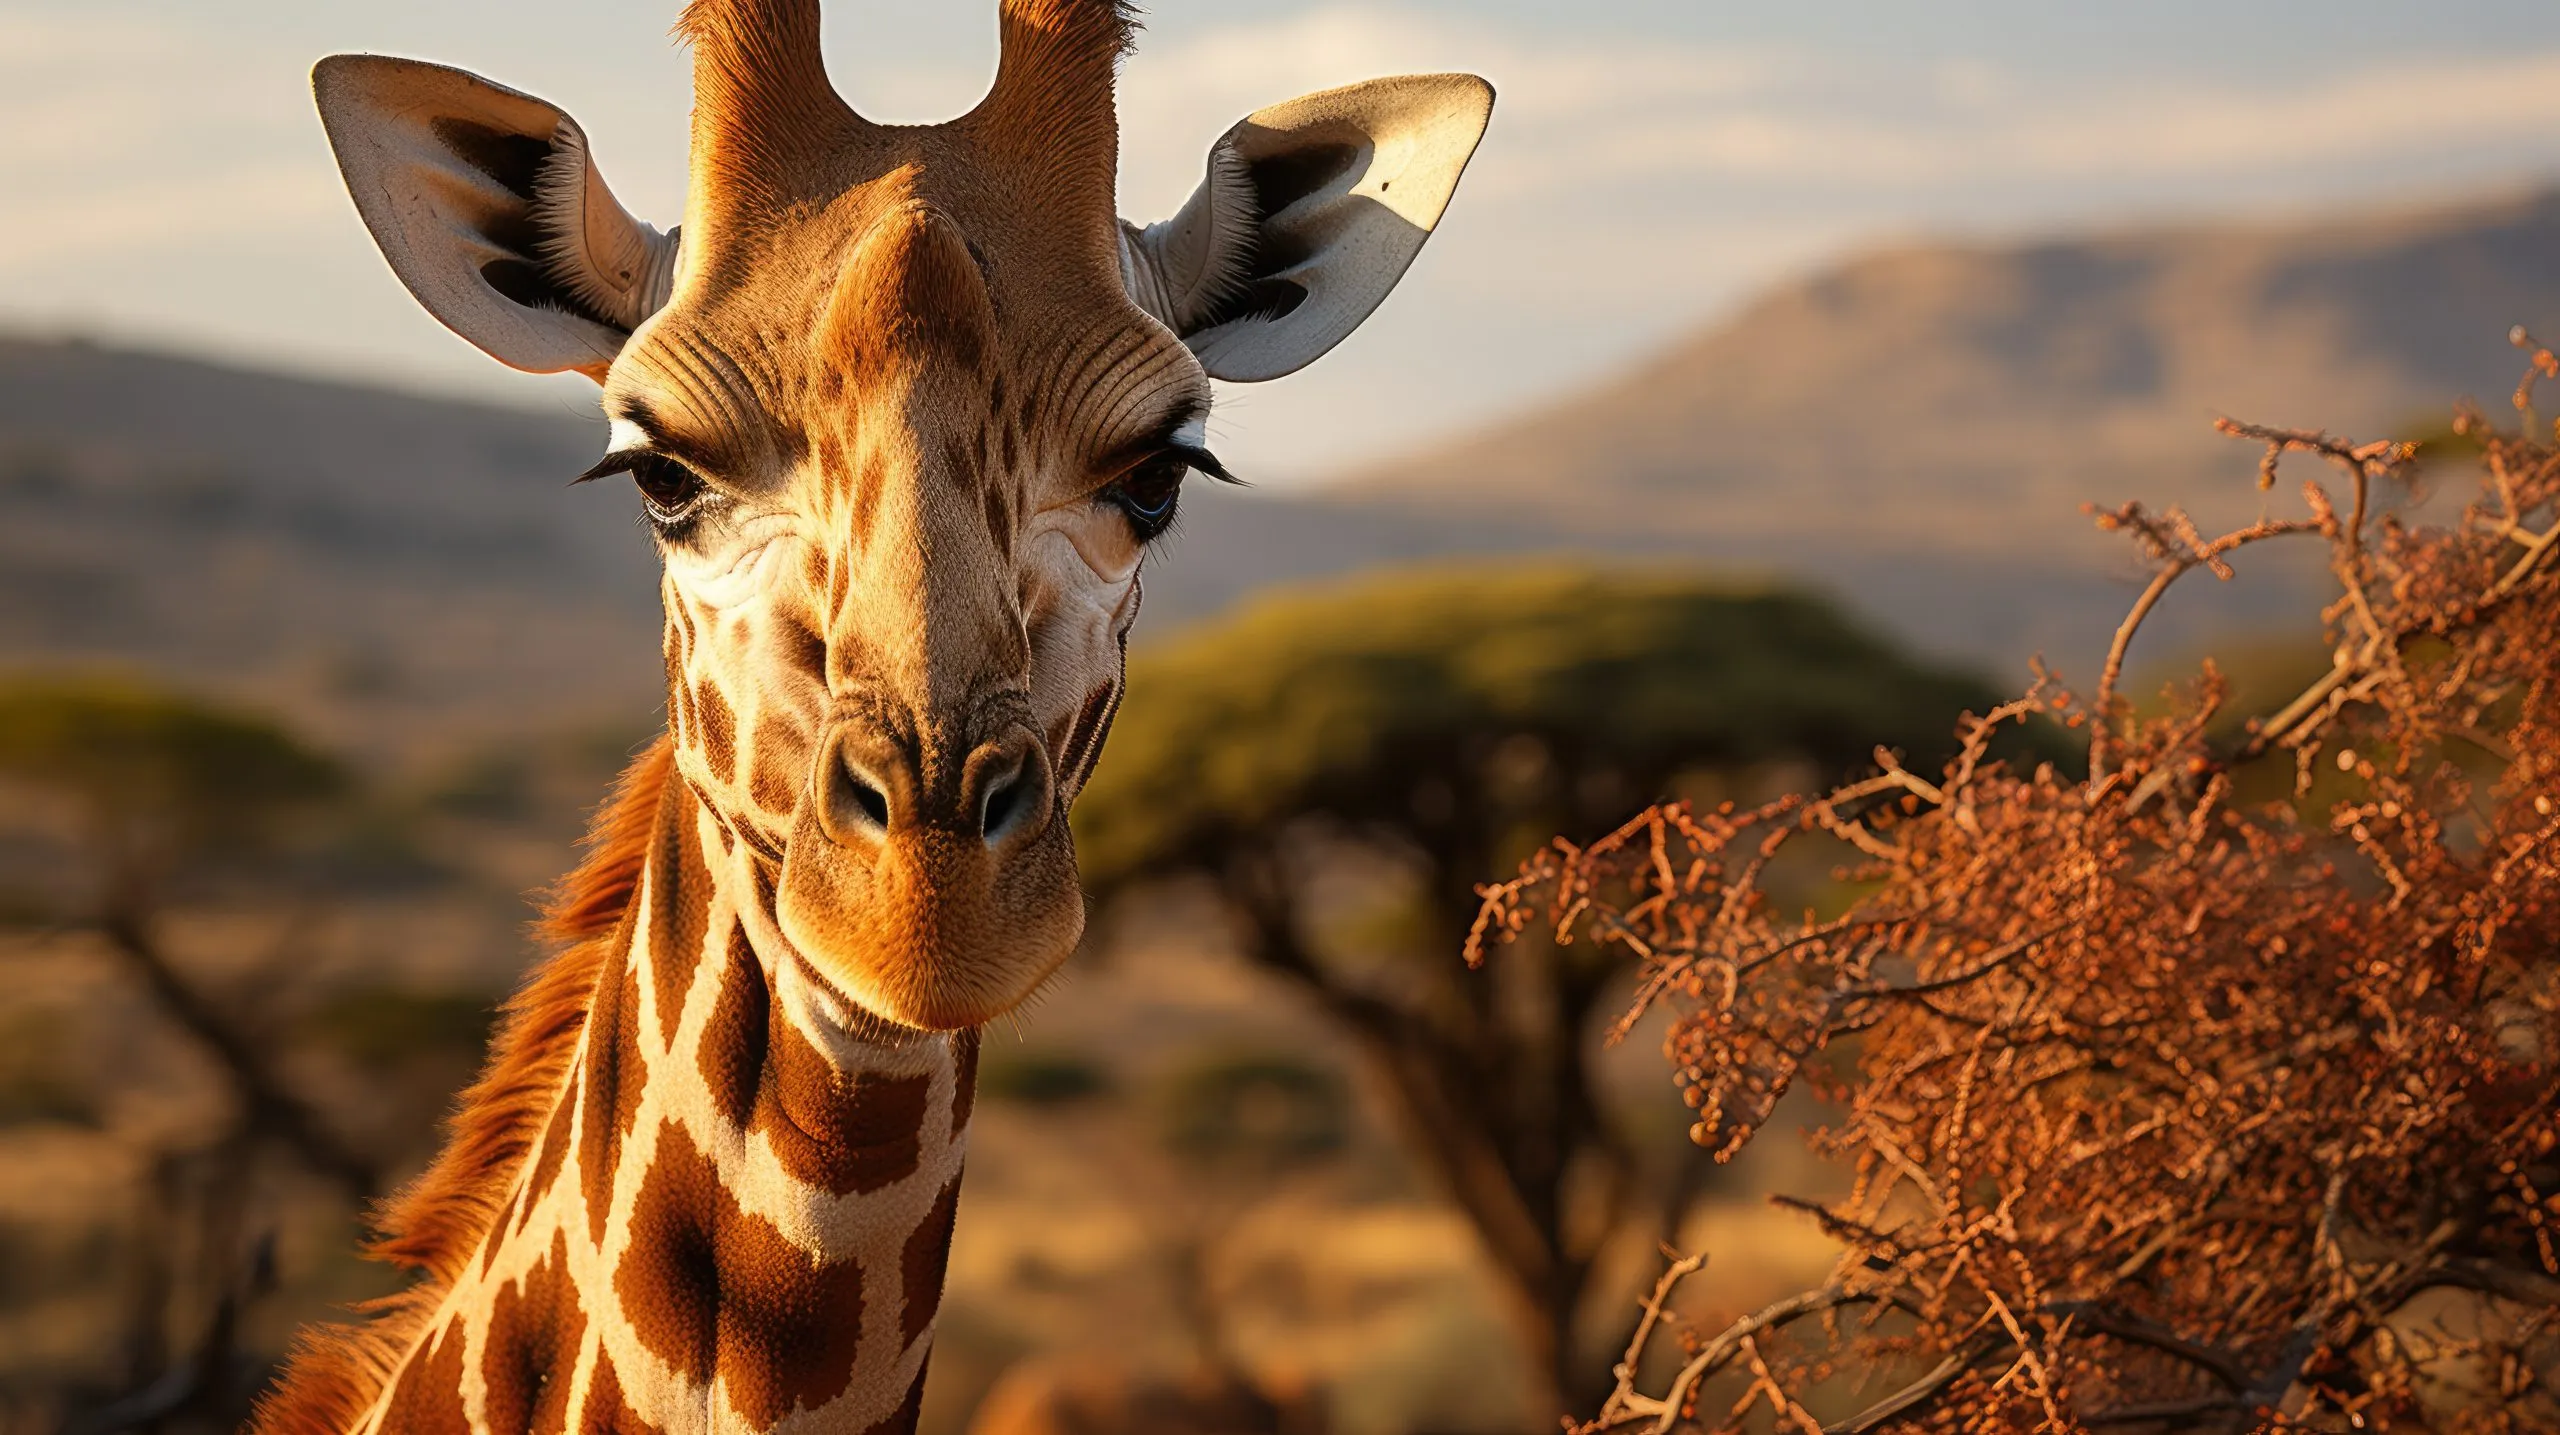 En retikulerad giraff (Giraffa camelopardalis reticulata) betar på de översta grenarna av ett akaciaträd i Samburu National Reserve i Kenya, med sin långa hals och mönstrade päls som sticker ut i det afrikanska landskapet.